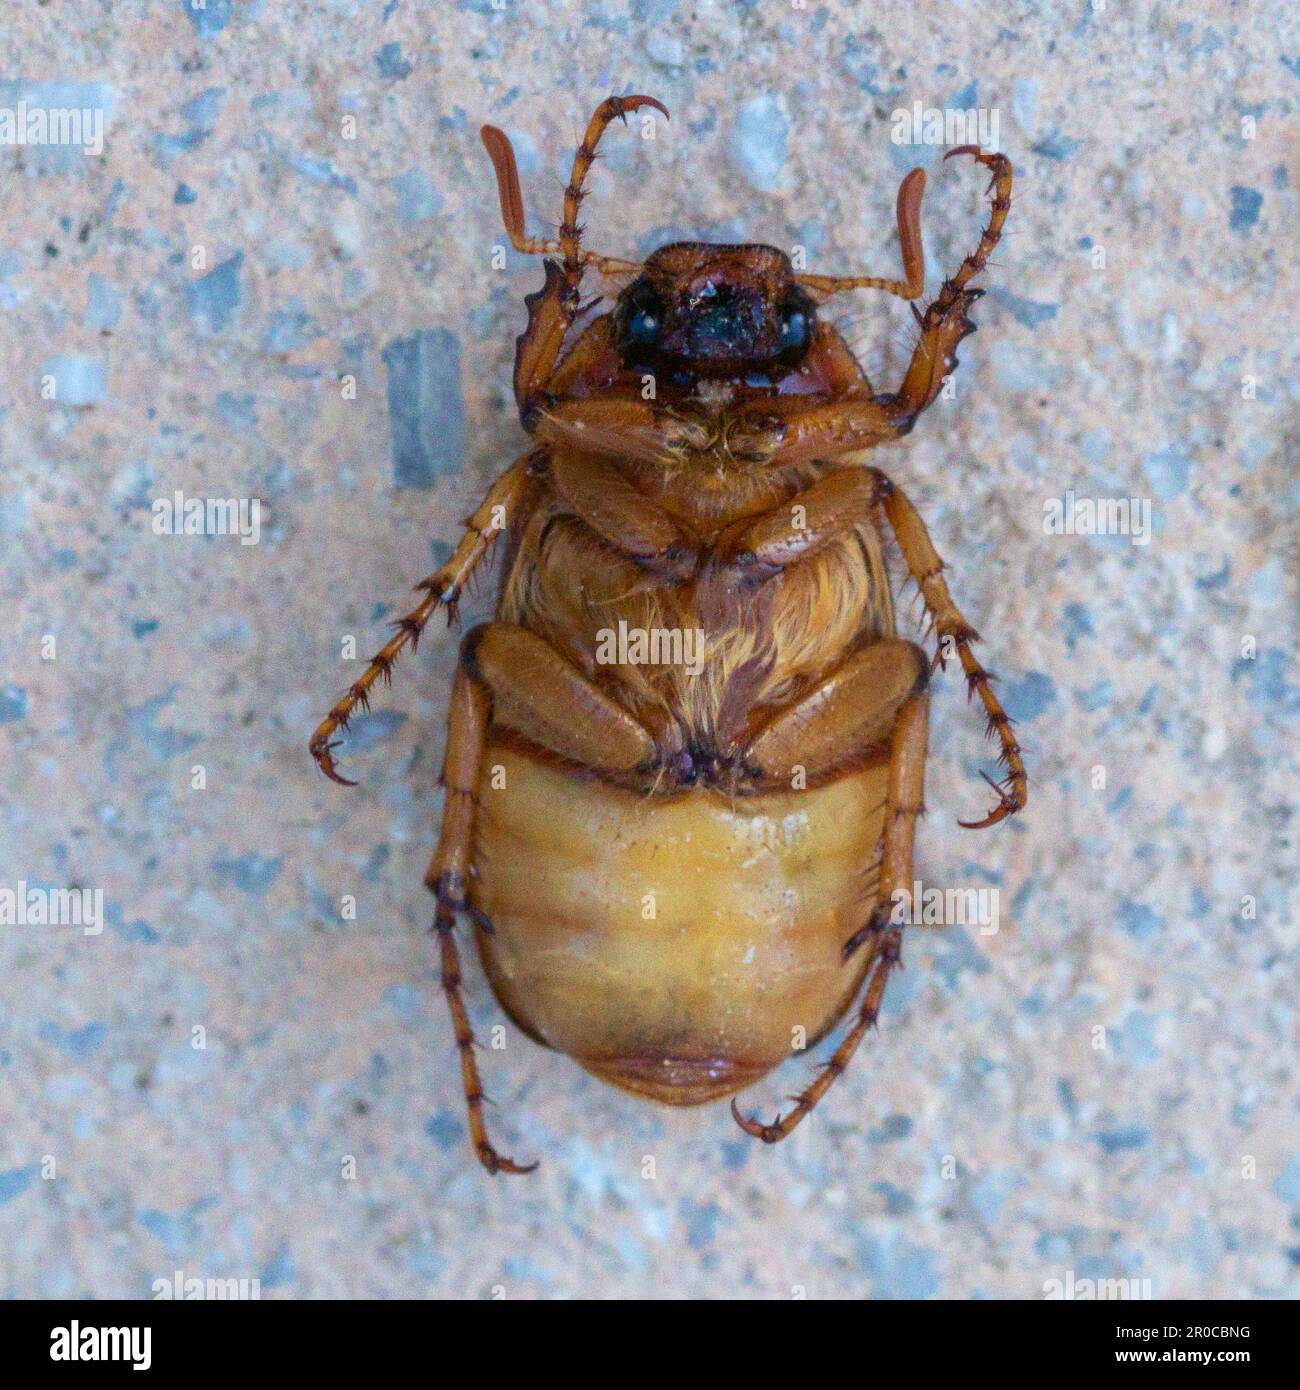 Amphimallon majale, European Chafer Beetle Stock Photo